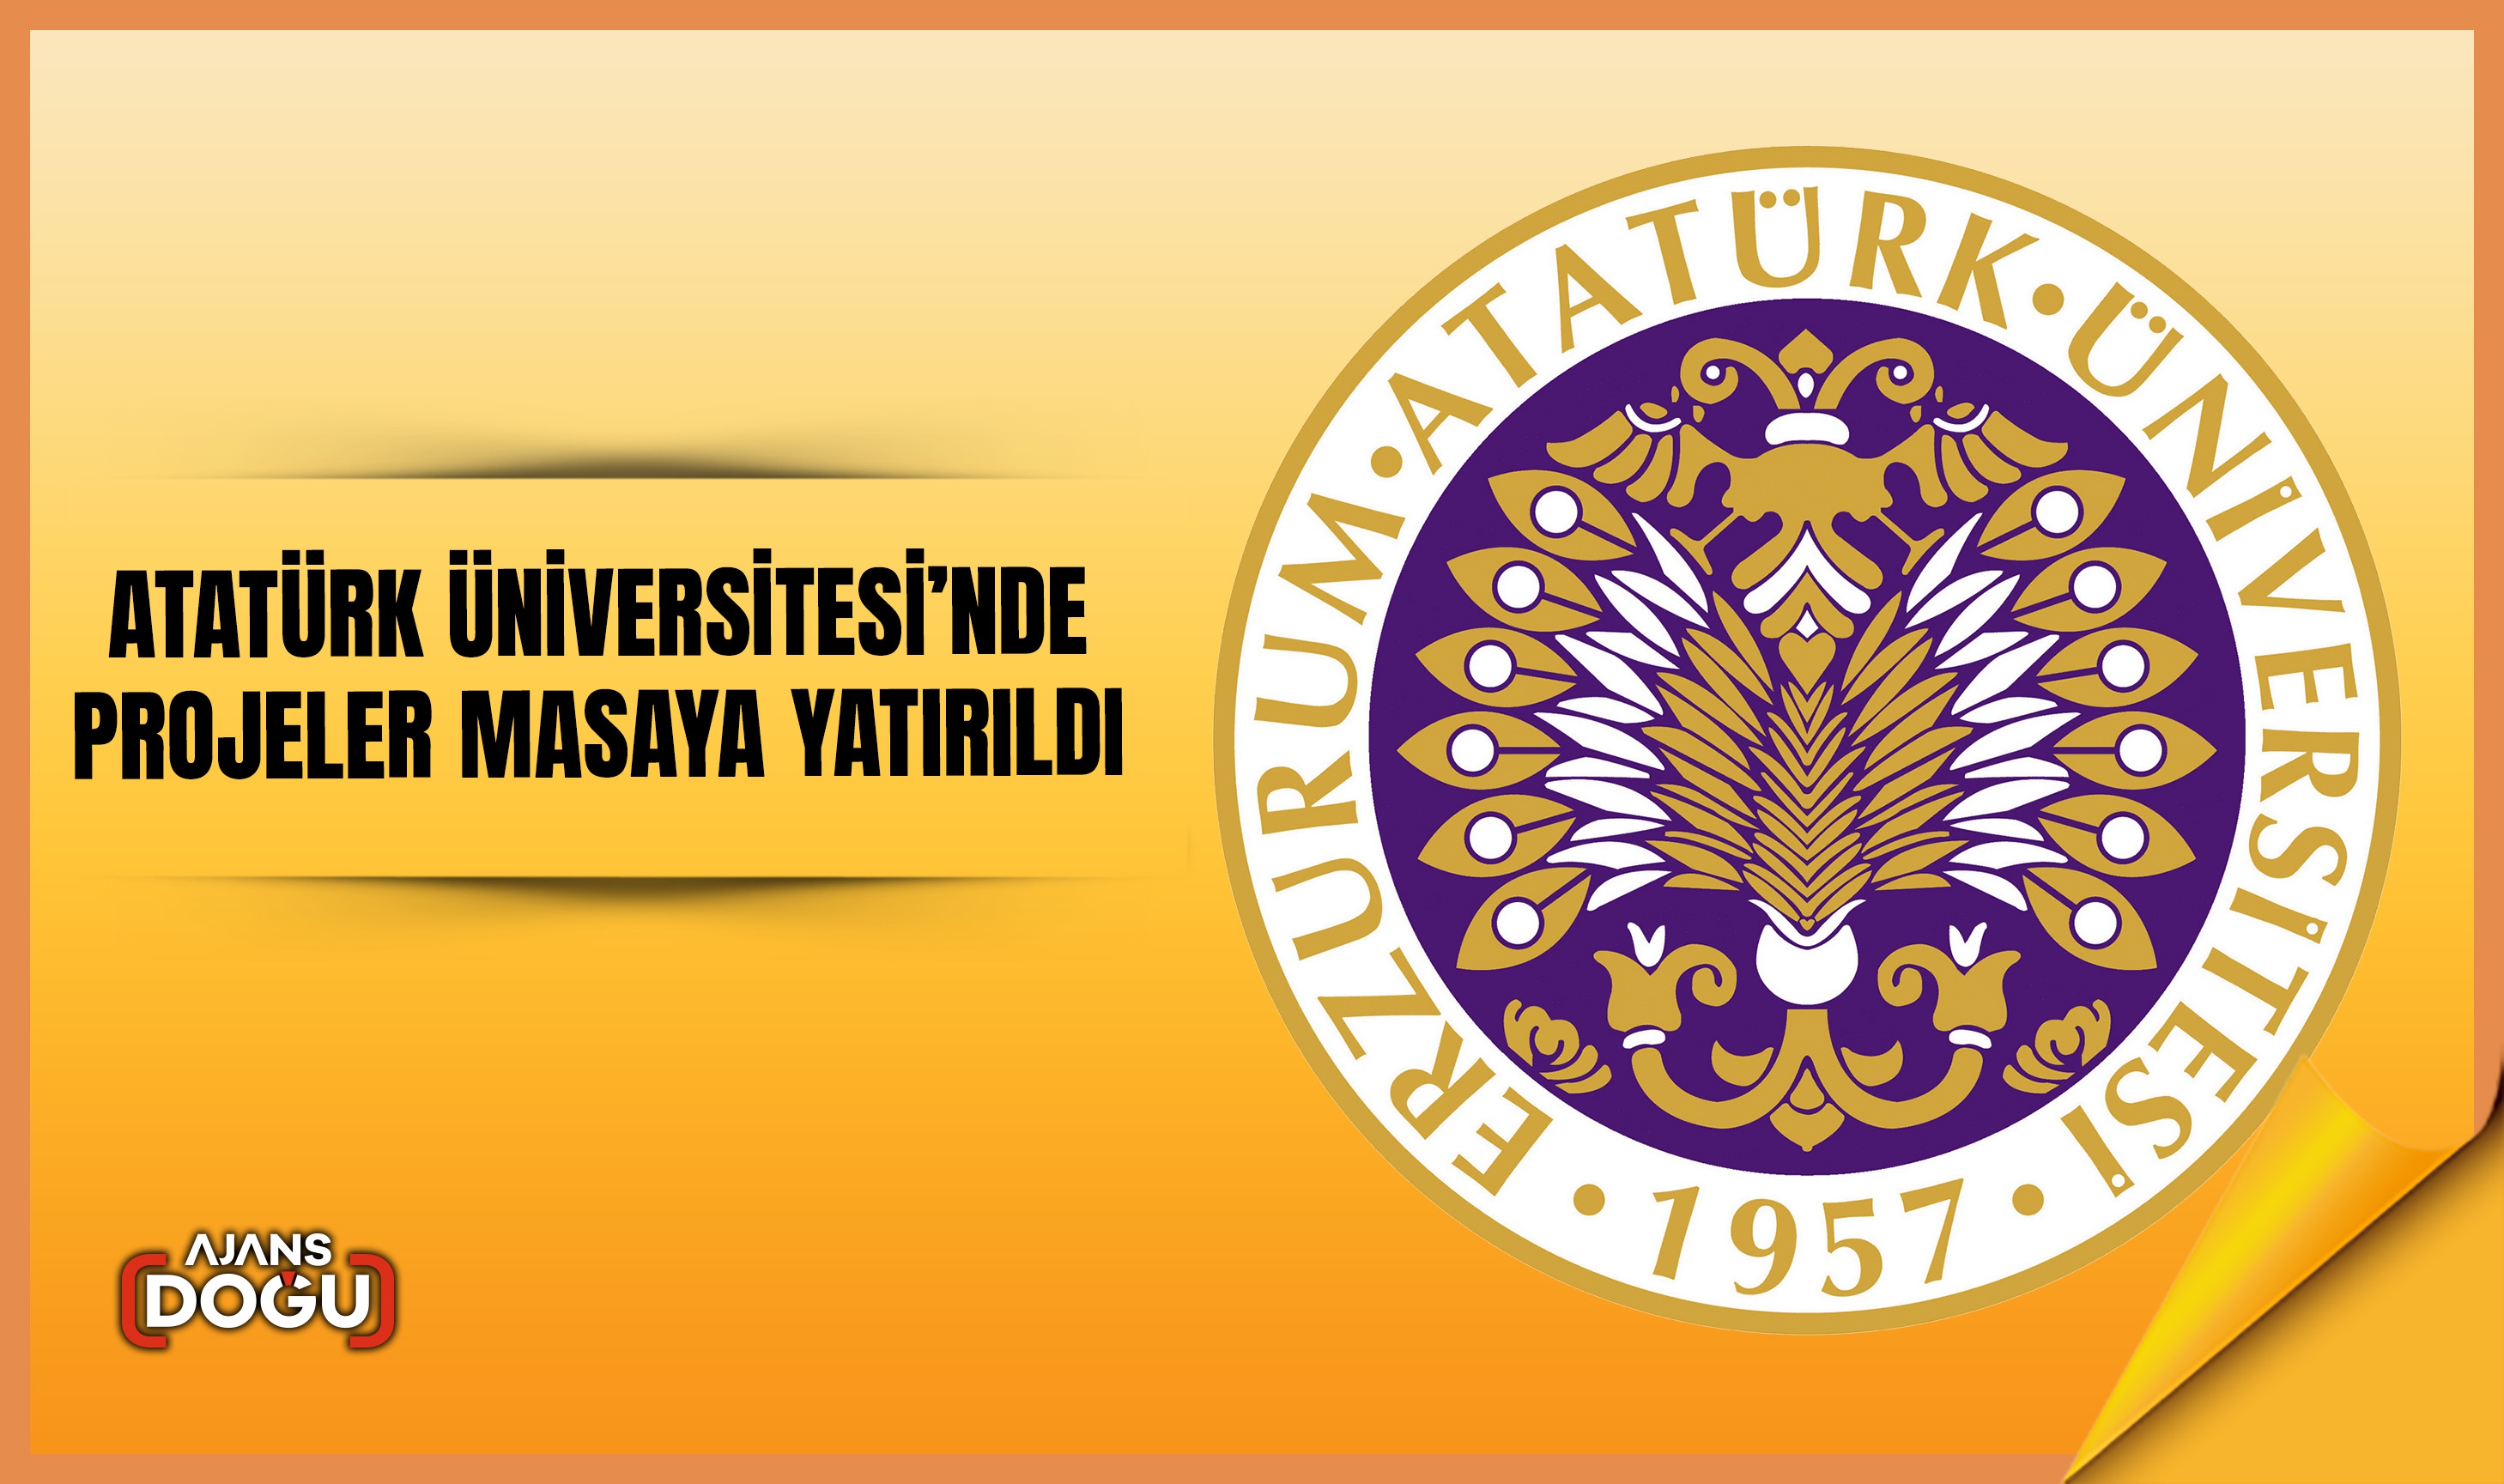 Atatürk Üniversitesi’nde projeler masaya yatırıldı